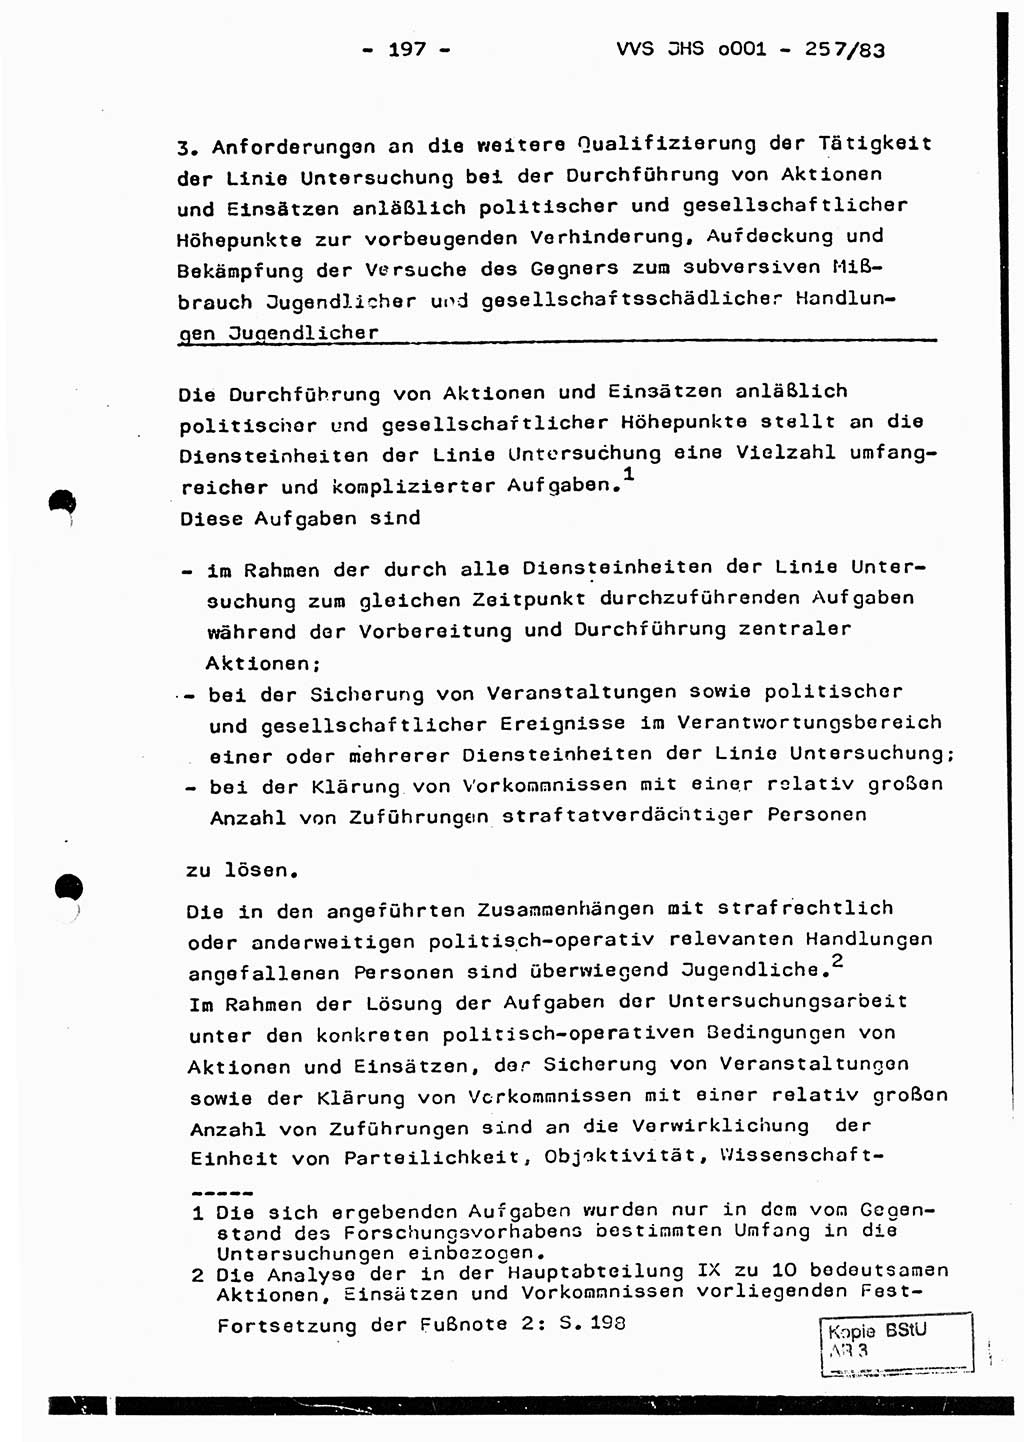 Dissertation, Oberst Helmut Lubas (BV Mdg.), Oberstleutnant Manfred Eschberger (HA IX), Oberleutnant Hans-Jürgen Ludwig (JHS), Ministerium für Staatssicherheit (MfS) [Deutsche Demokratische Republik (DDR)], Juristische Hochschule (JHS), Vertrauliche Verschlußsache (VVS) o001-257/83, Potsdam 1983, Seite 197 (Diss. MfS DDR JHS VVS o001-257/83 1983, S. 197)